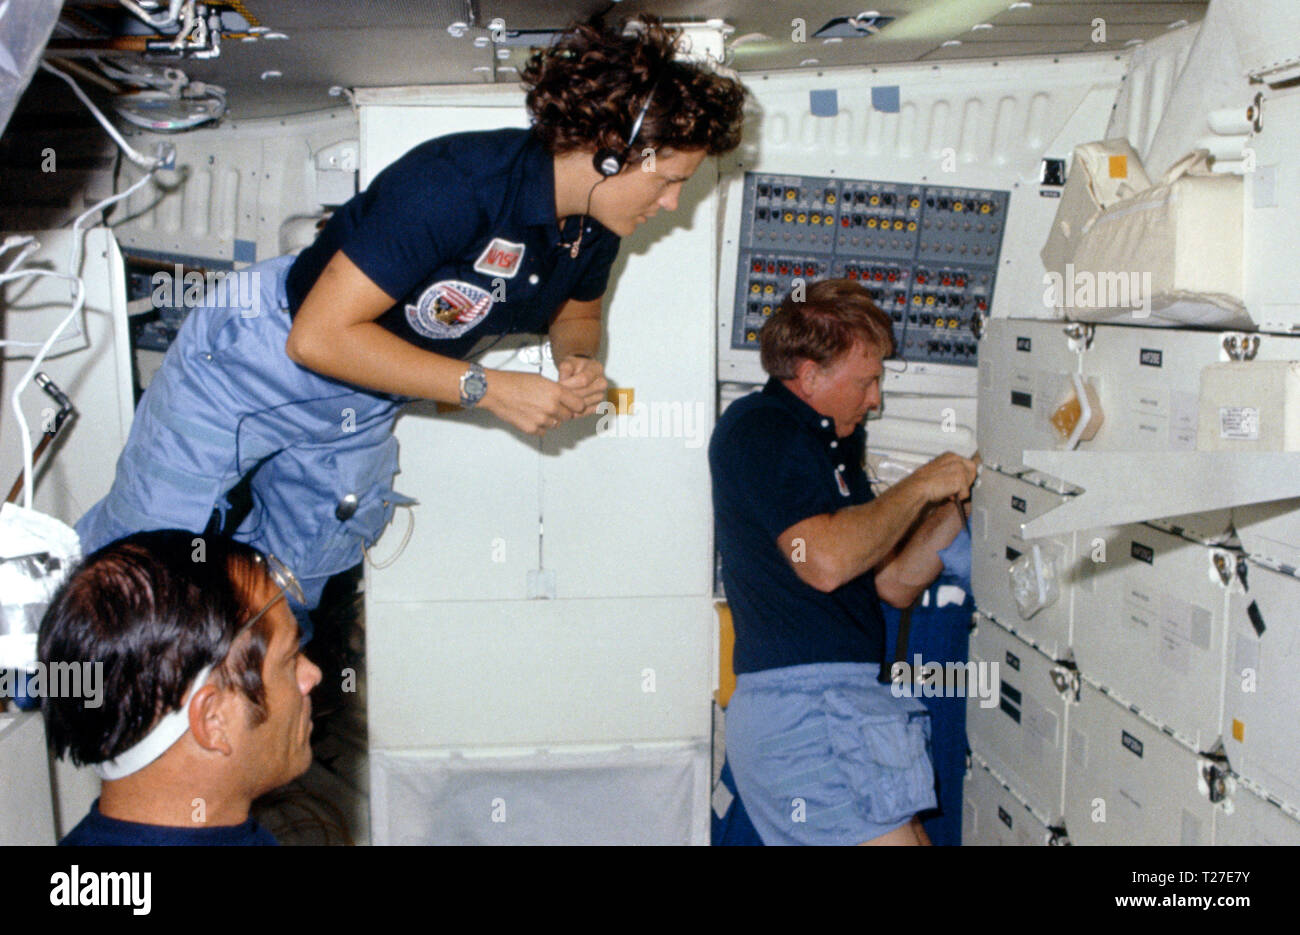 41 G -102-003 (5-13 Okt 1984) - - - - Astronaut Kathryn D. Sullivan, 41-G-Mission Specialist, schwimmt in einem middeck Szene ein Mehr stationäre Paar Crewmitglieder - - - Astronauten Robert L. Crippen, crew Commander zu verbinden; und Jon A. McBride, Pilot. Der vorstehende Artikel in der Nähe der Stauraum ist ein Krimsky Regel, Teil der in der Nähe von sehschärfe Experiment, in dem die Jüngsten NASA Space Travelers teilgenommen haben. Stockfoto